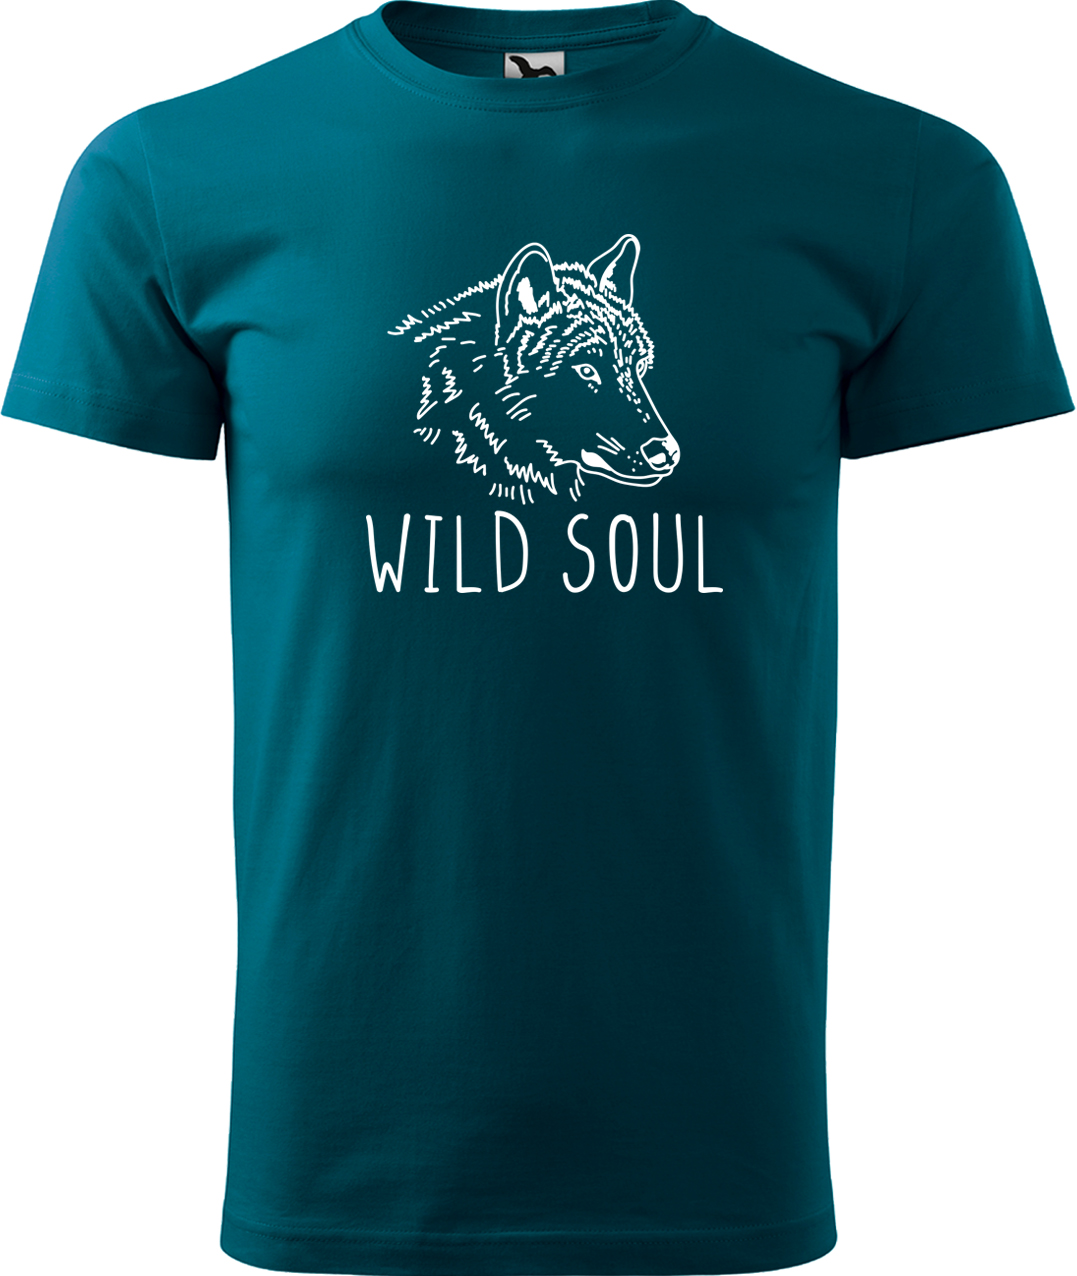 Pánské tričko s vlkem - Wild soul Velikost: 4XL, Barva: Petrolejová (93), Střih: pánský